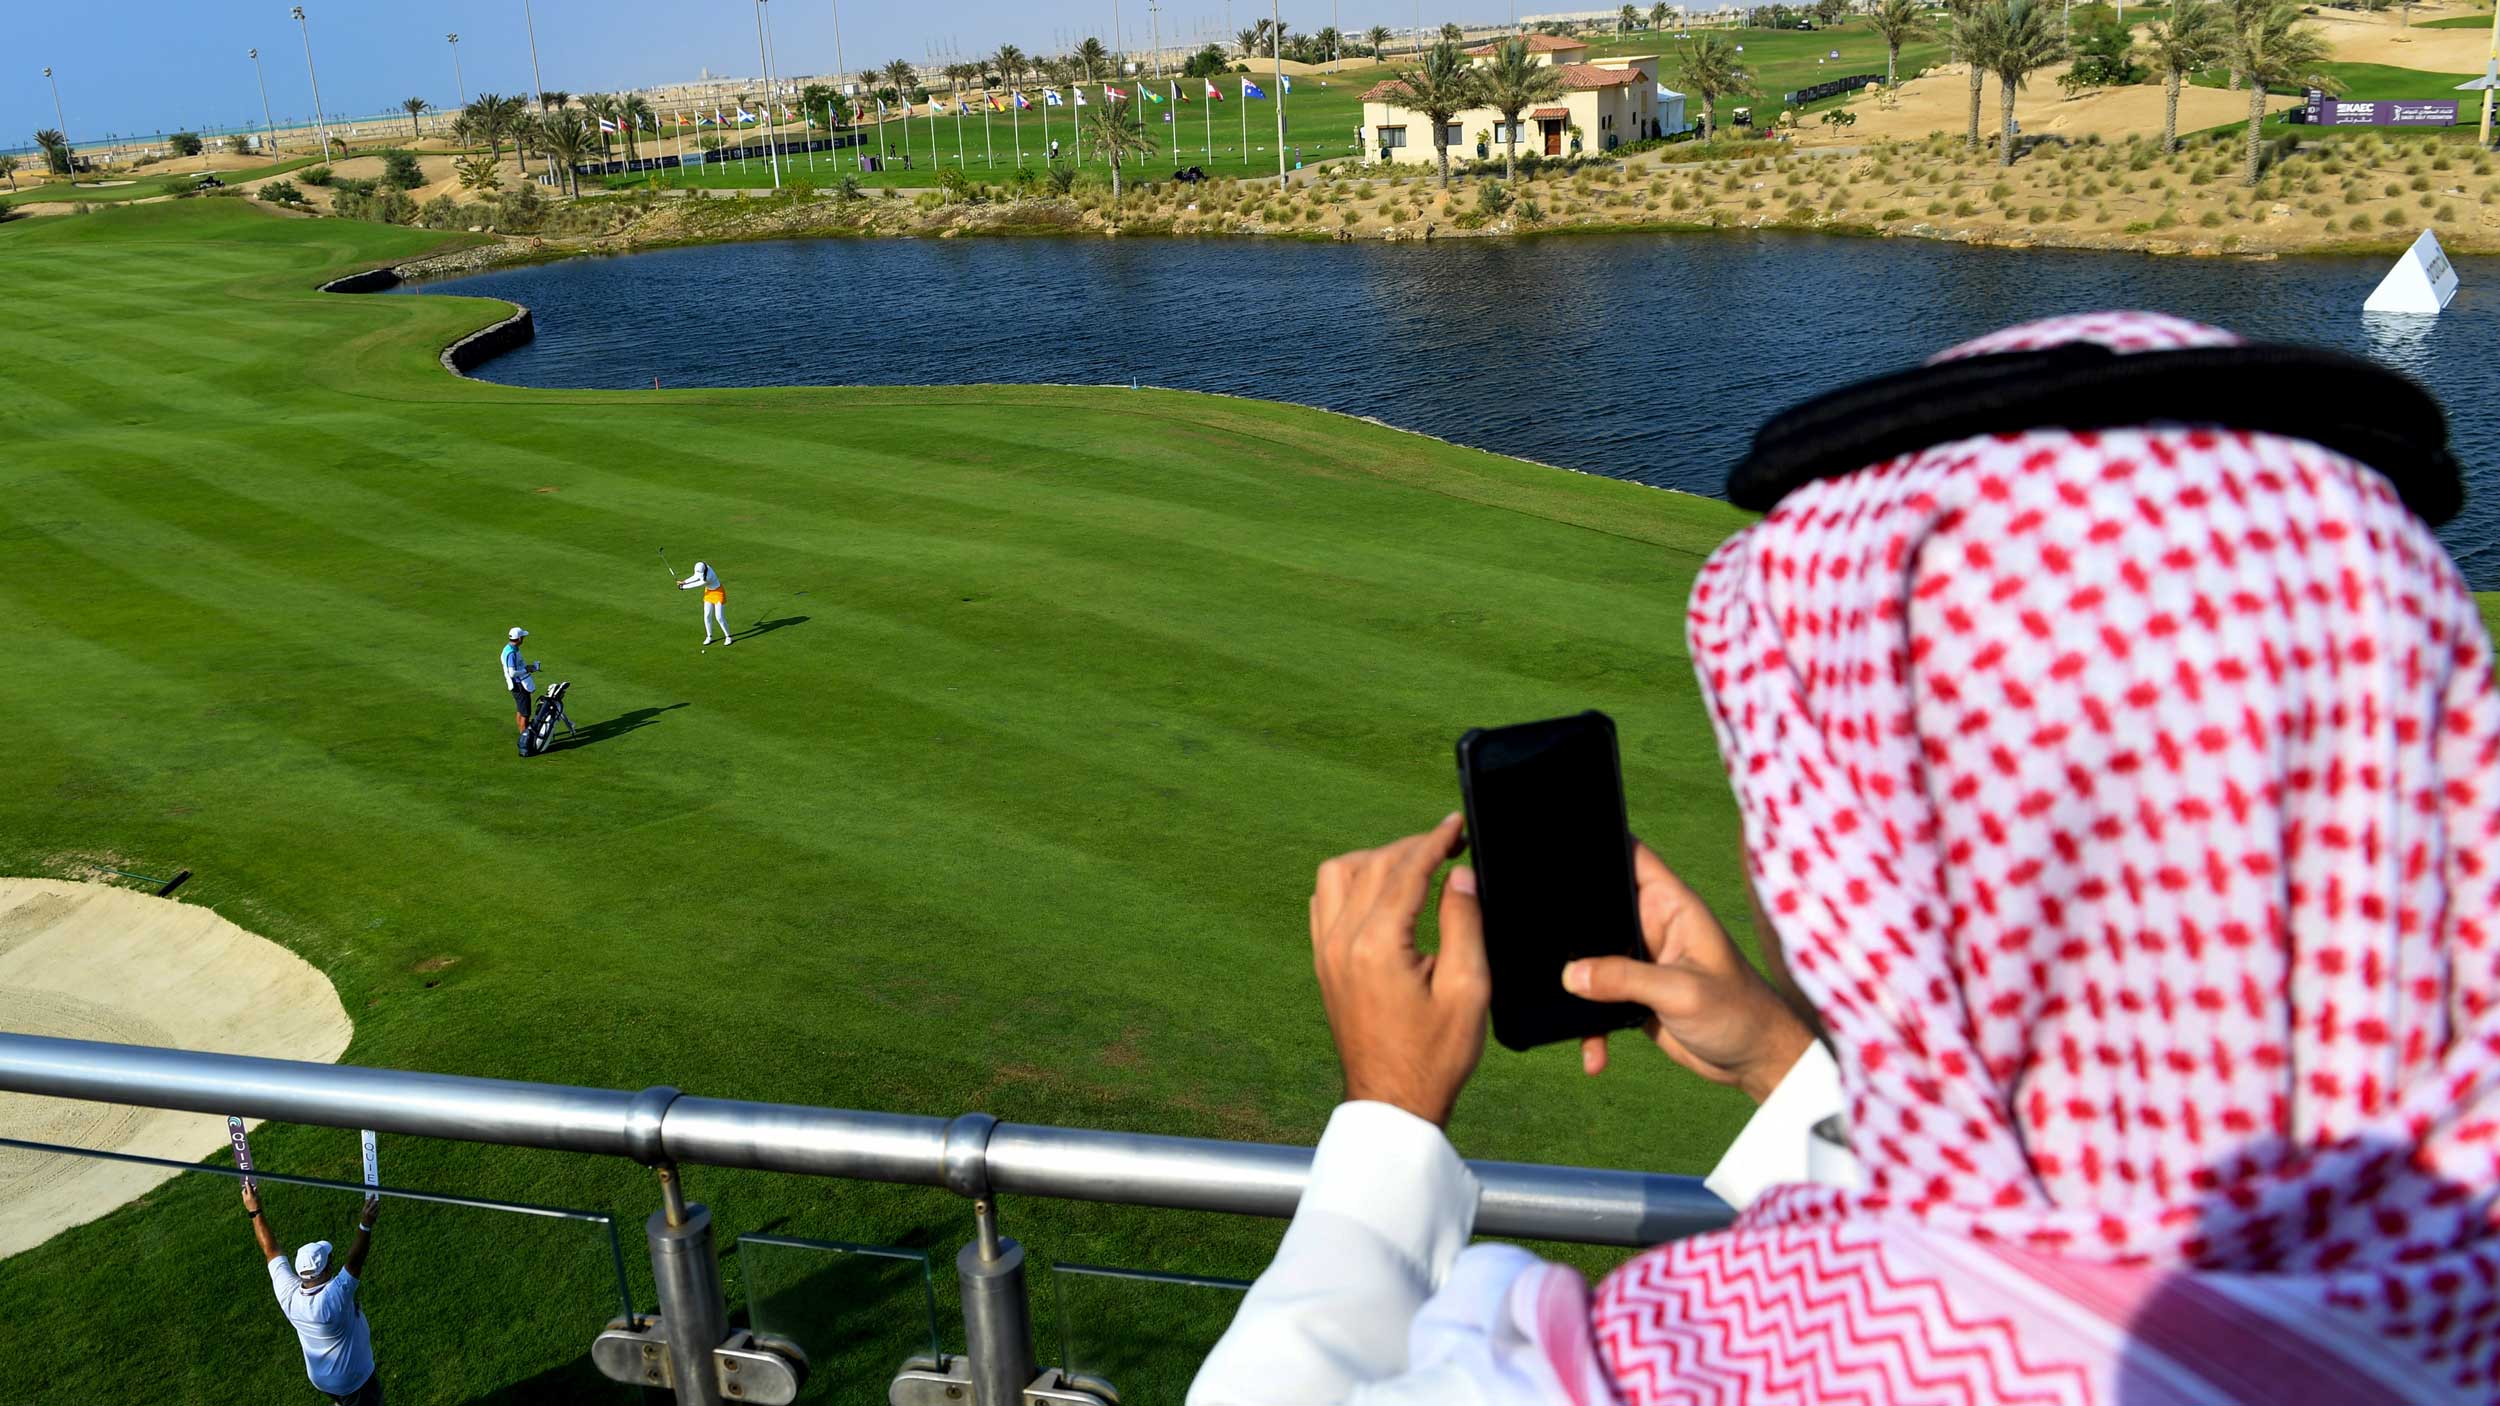 مجلة بريطانية: السعودية تريد إحداث تغيير جذري في عالم الجولف